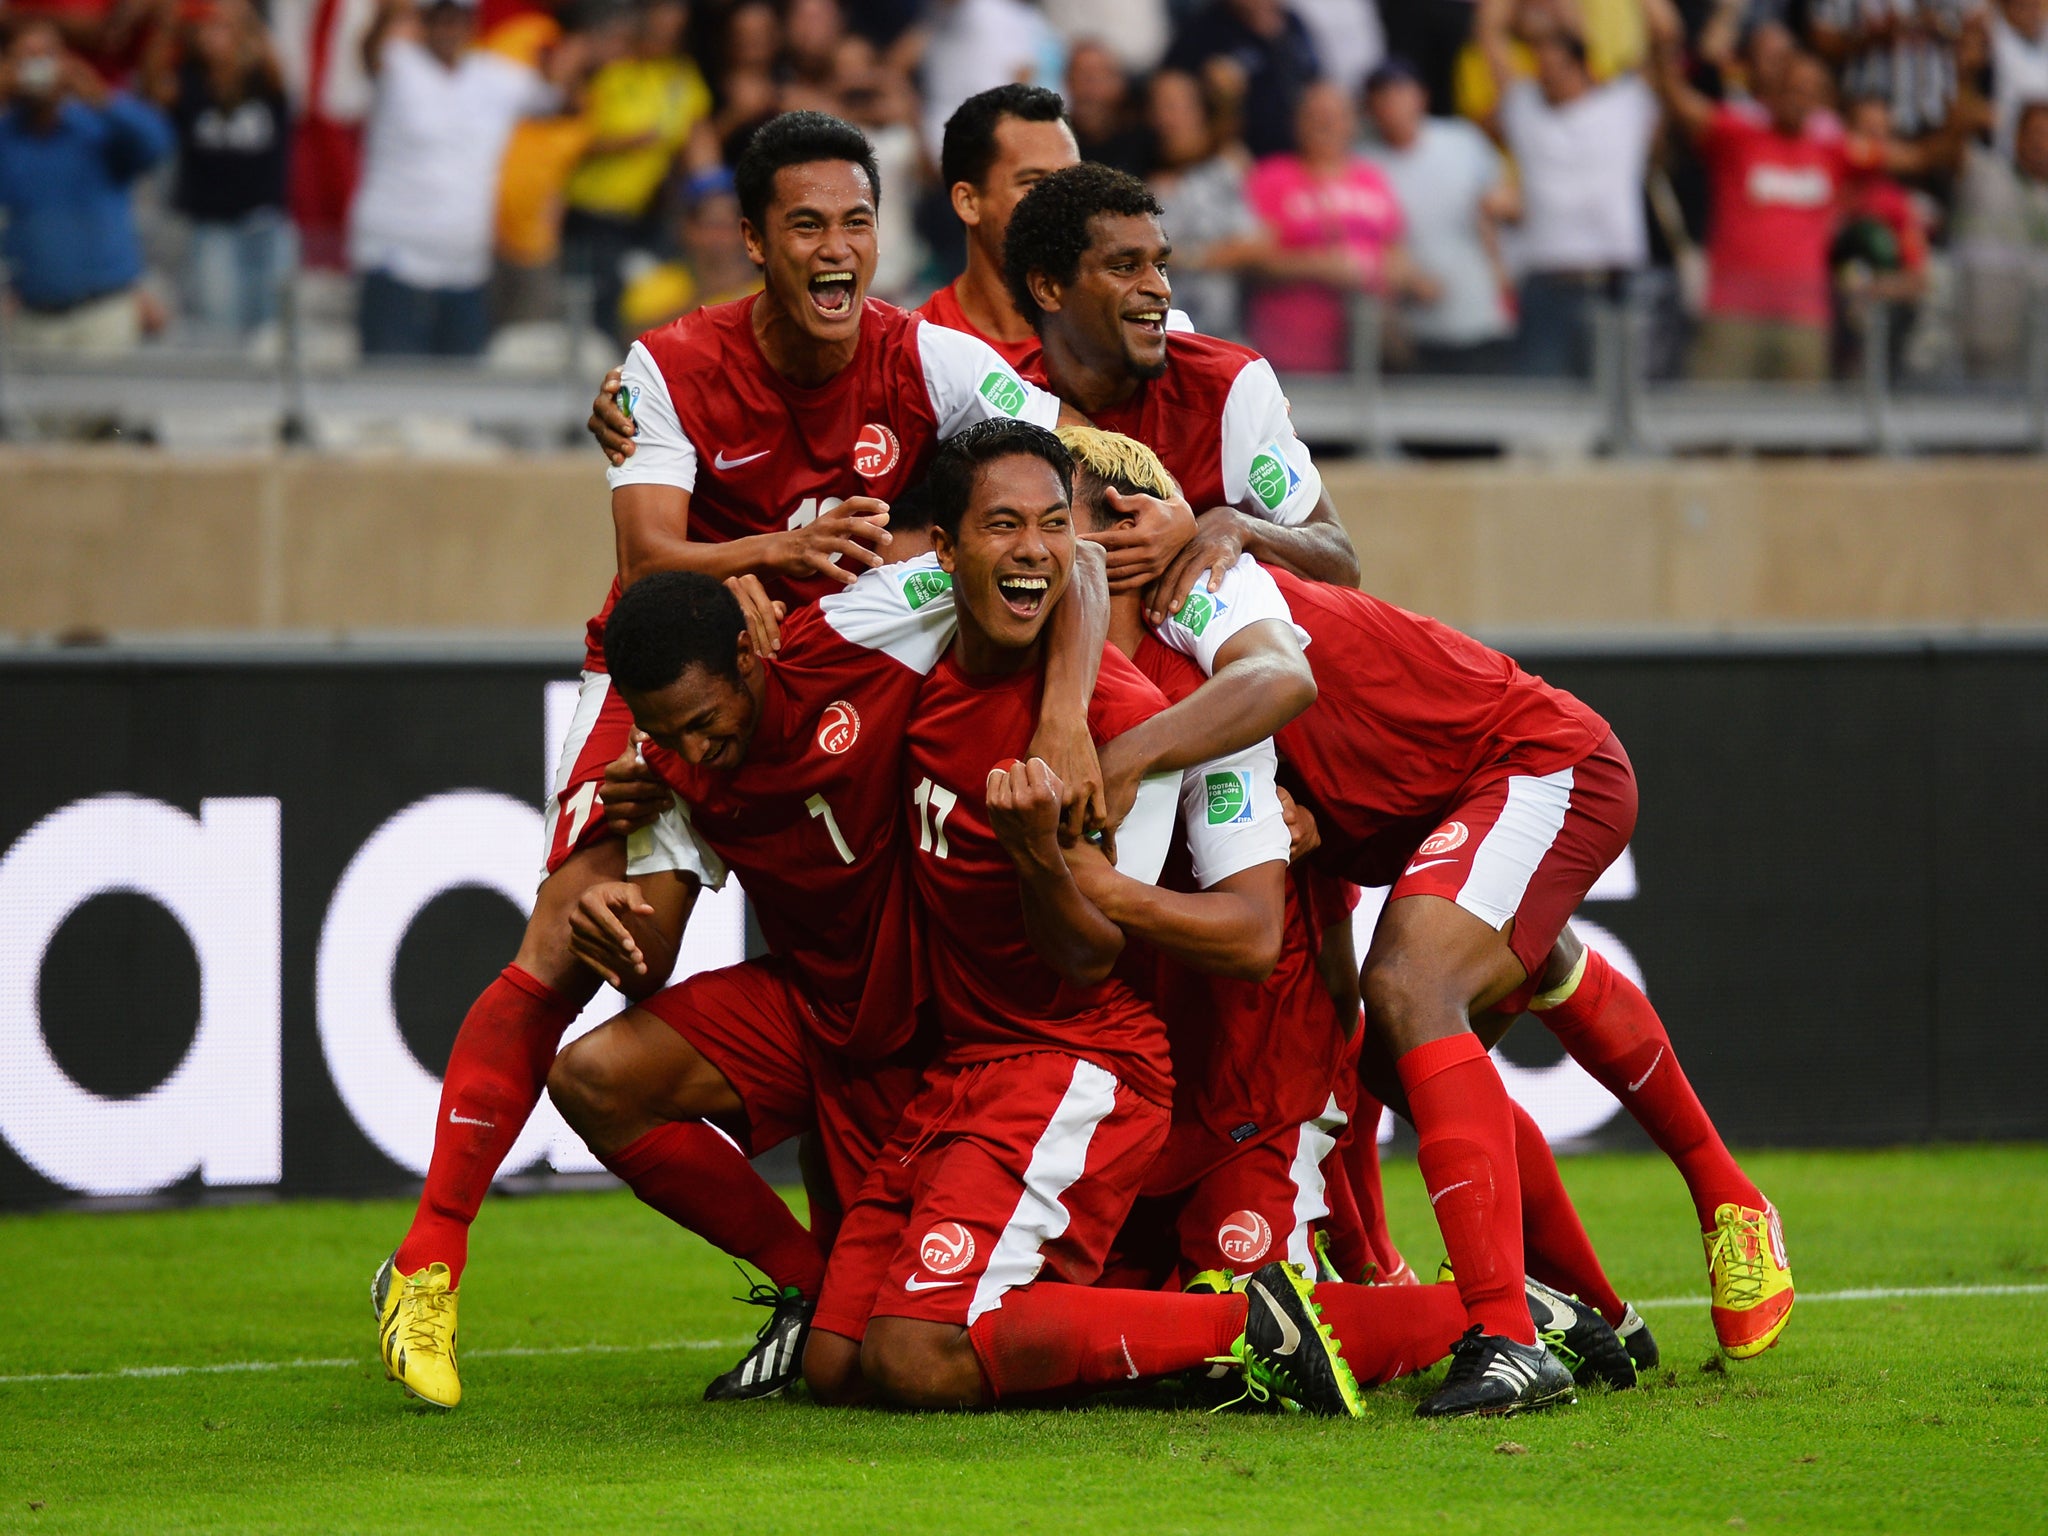 Jonathan Tehau celebrates a goal for Tahiti against Nigeria